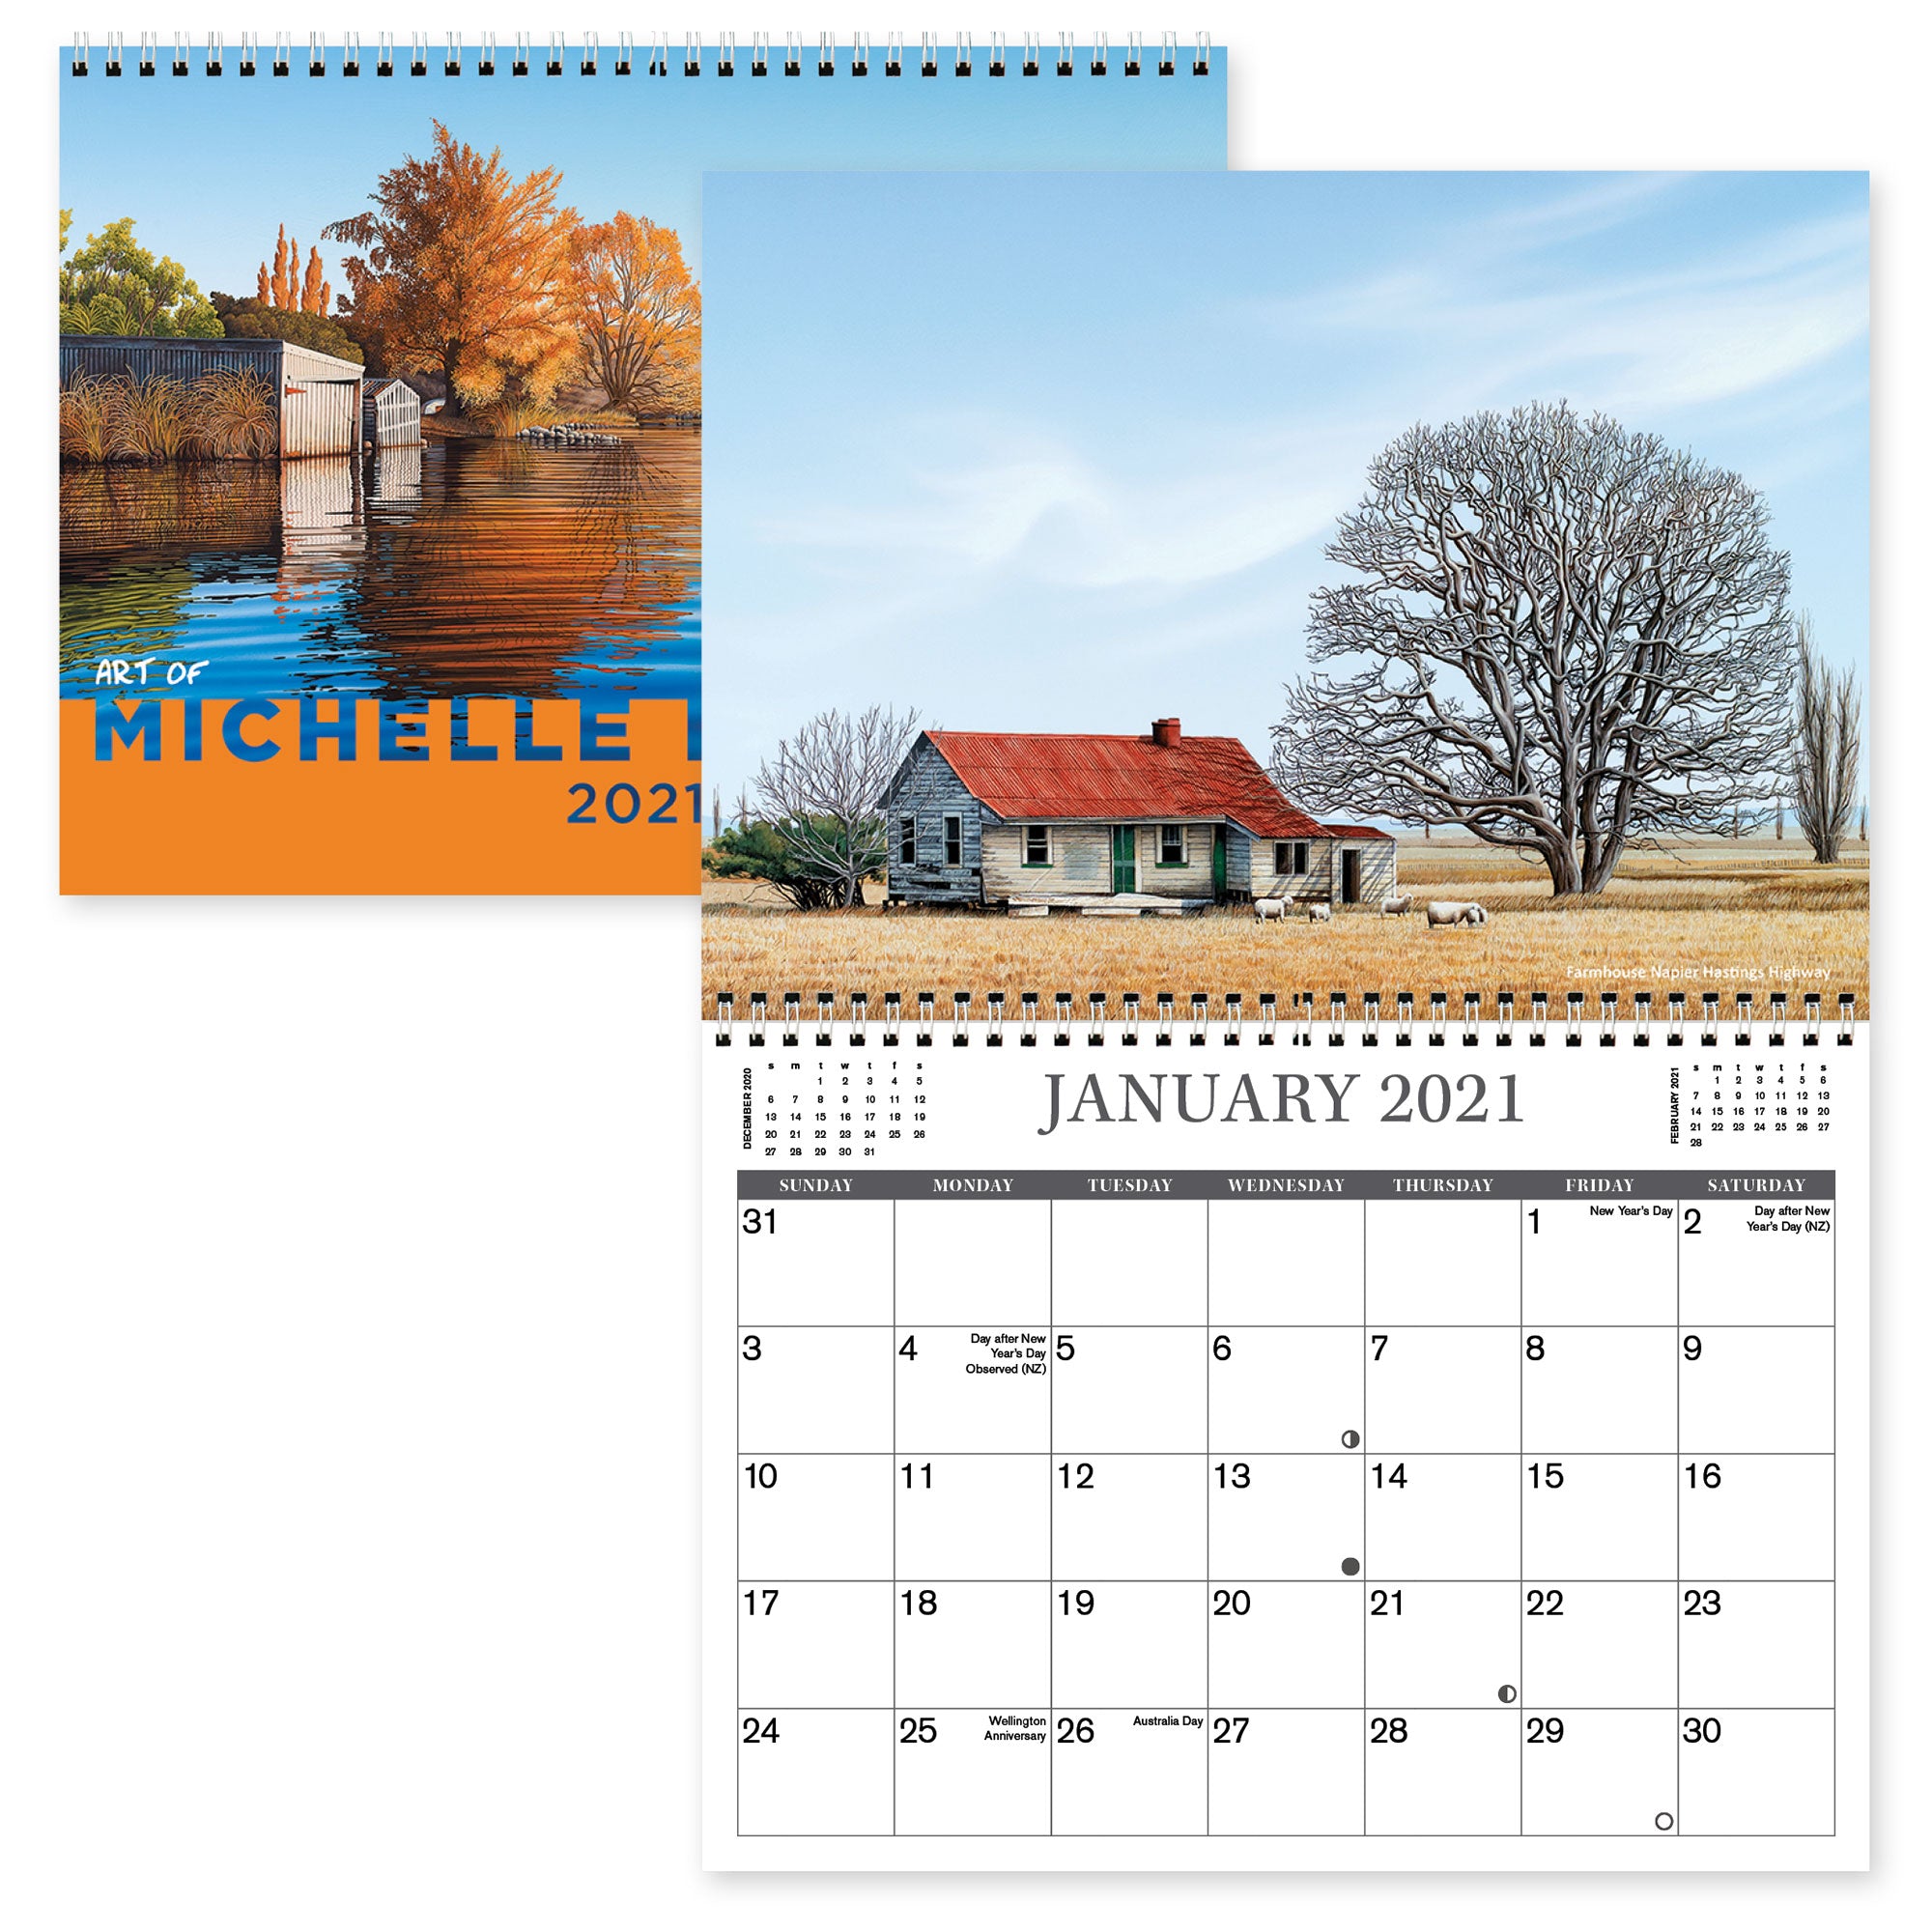 2021 Art of Michelle Bellamy Calendar